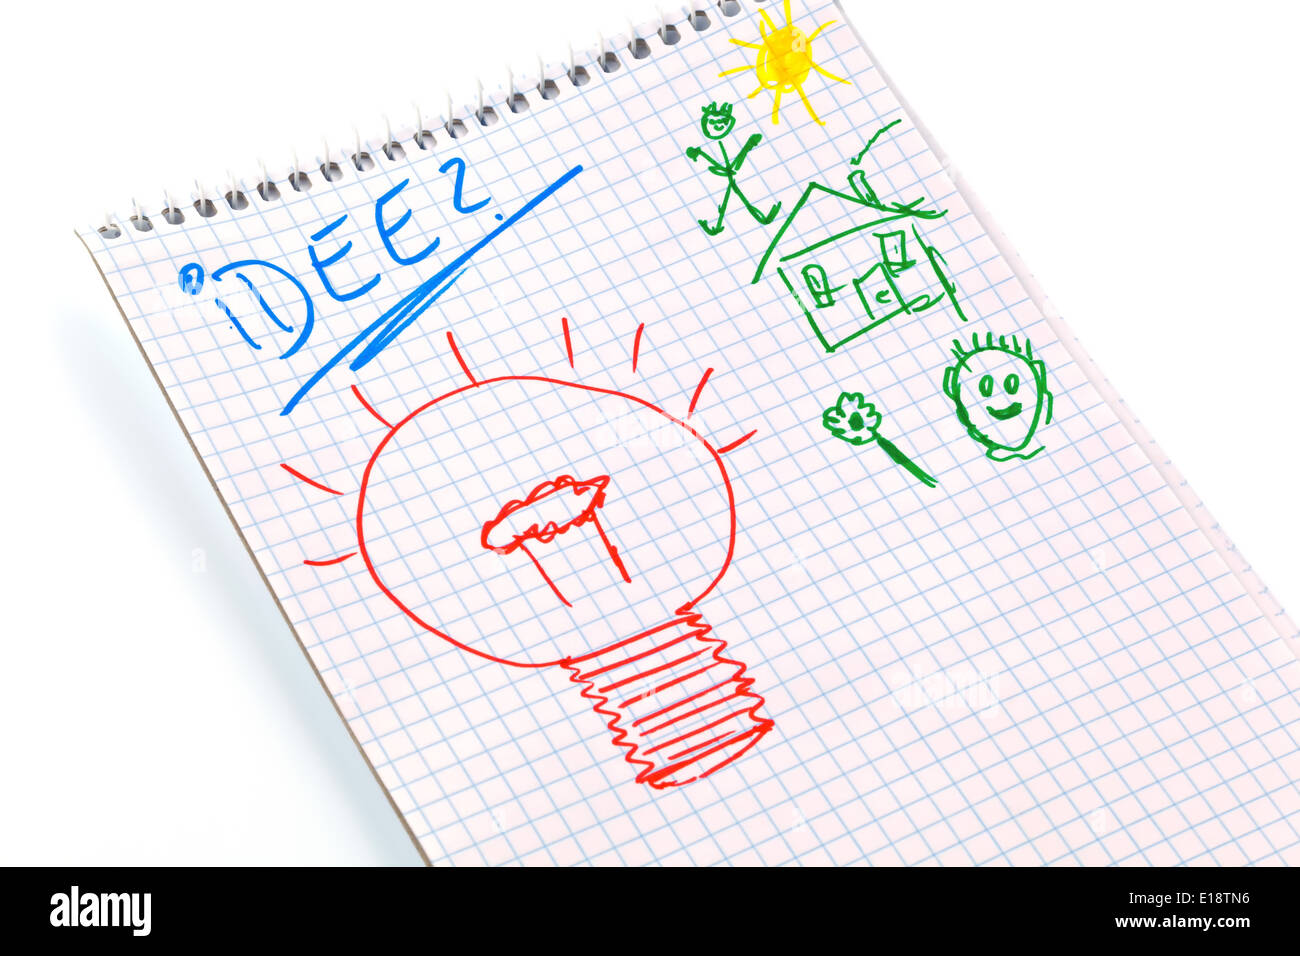 Ein Notizblock mit dem Schriftzug 'Idee'. Kreativität durch nachdenken. Stock Photo